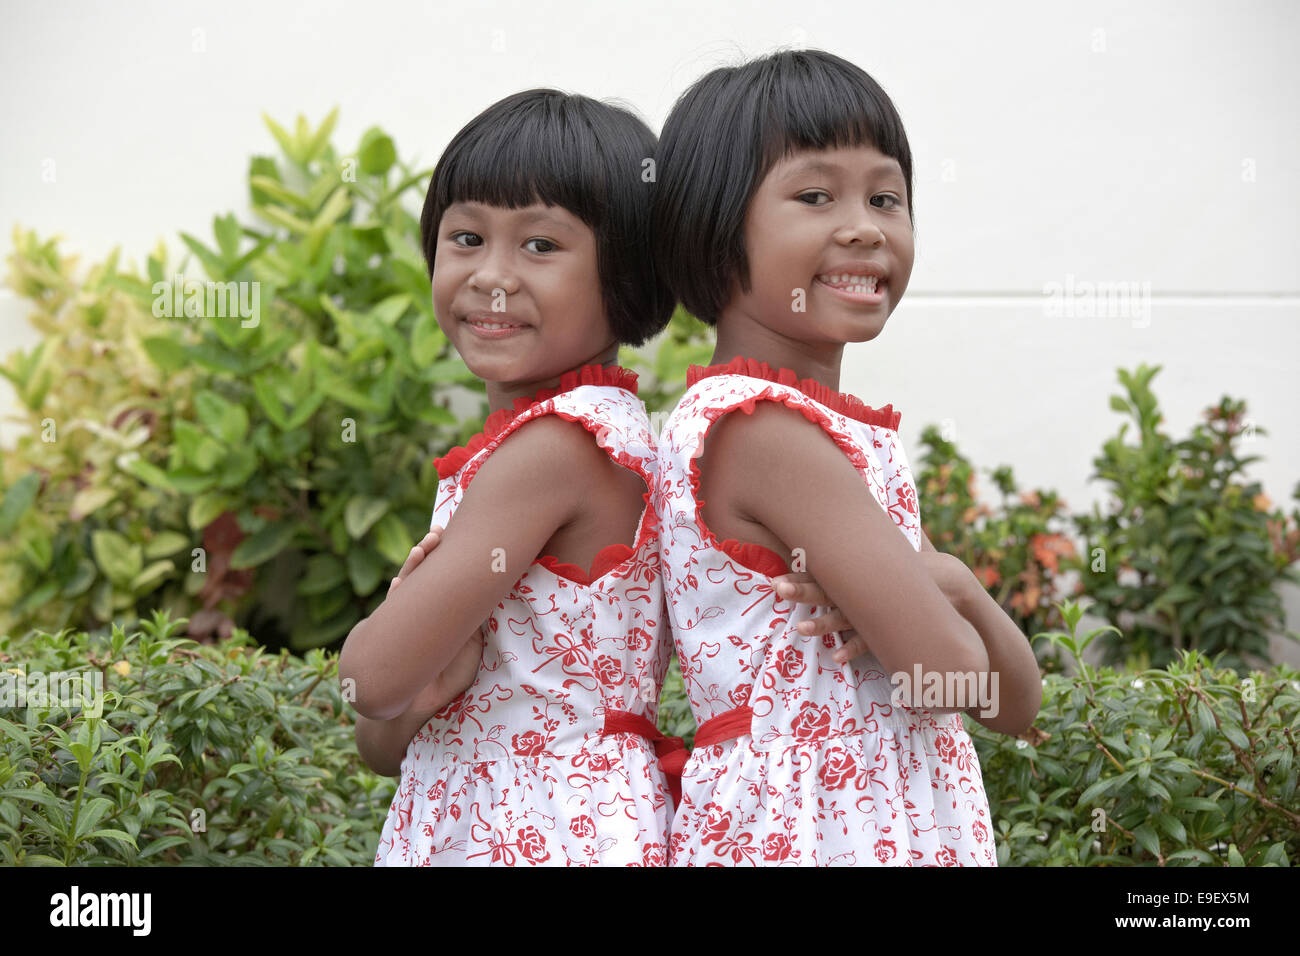 Jumeaux. Jumeaux thaïlandais identiques, sœurs de 6 ans. Thaïlande enfants S. E. Asie Banque D'Images